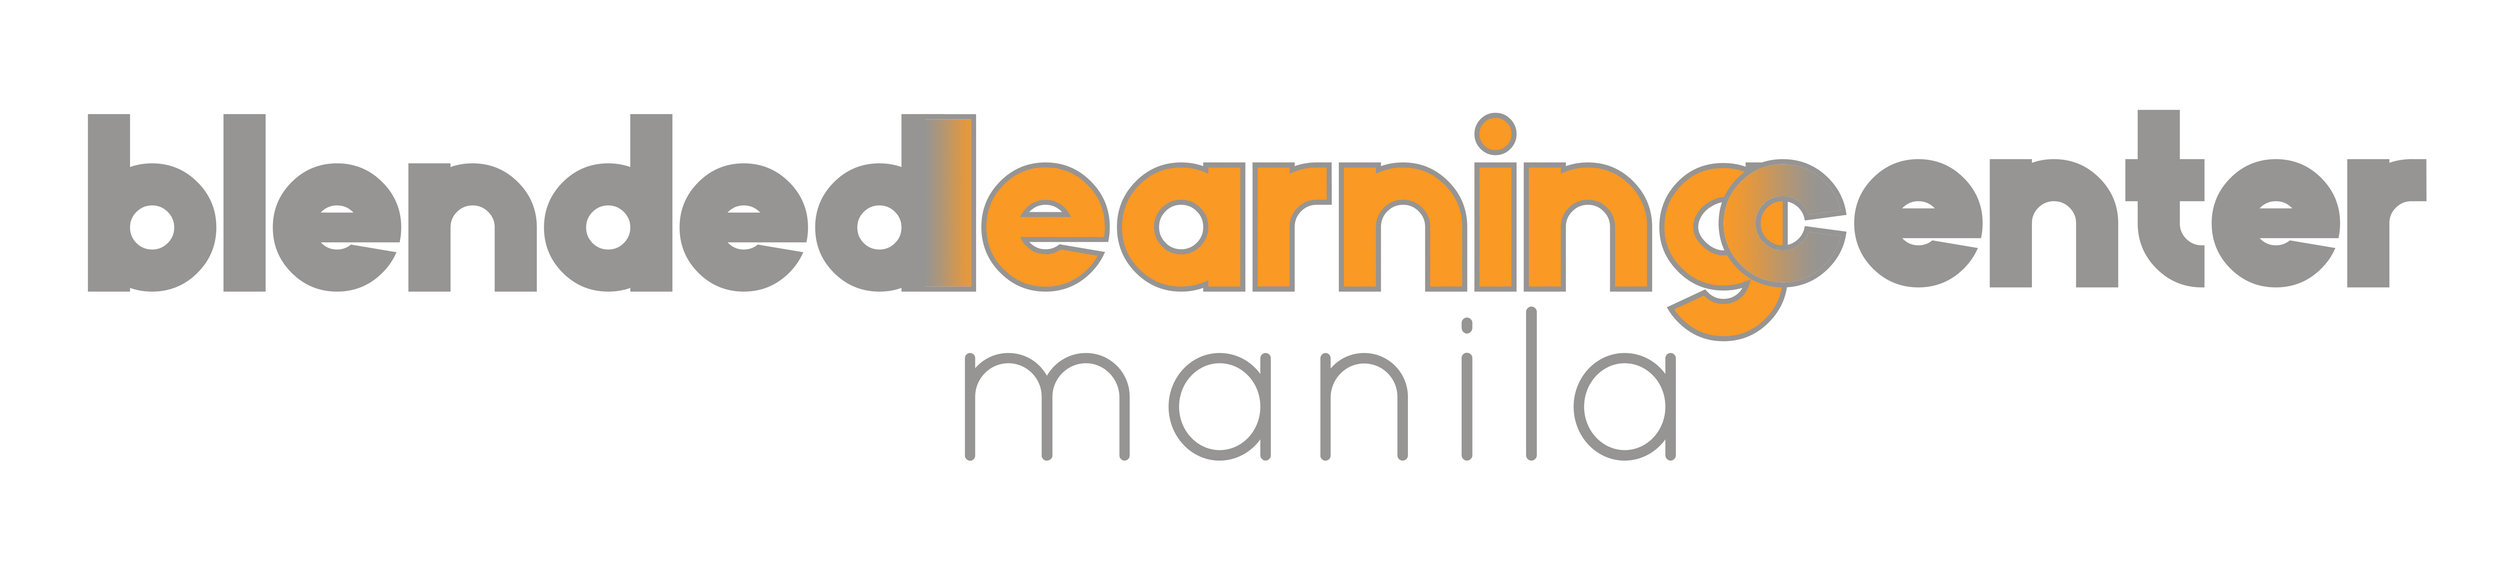 Blended Learning Center-Manila